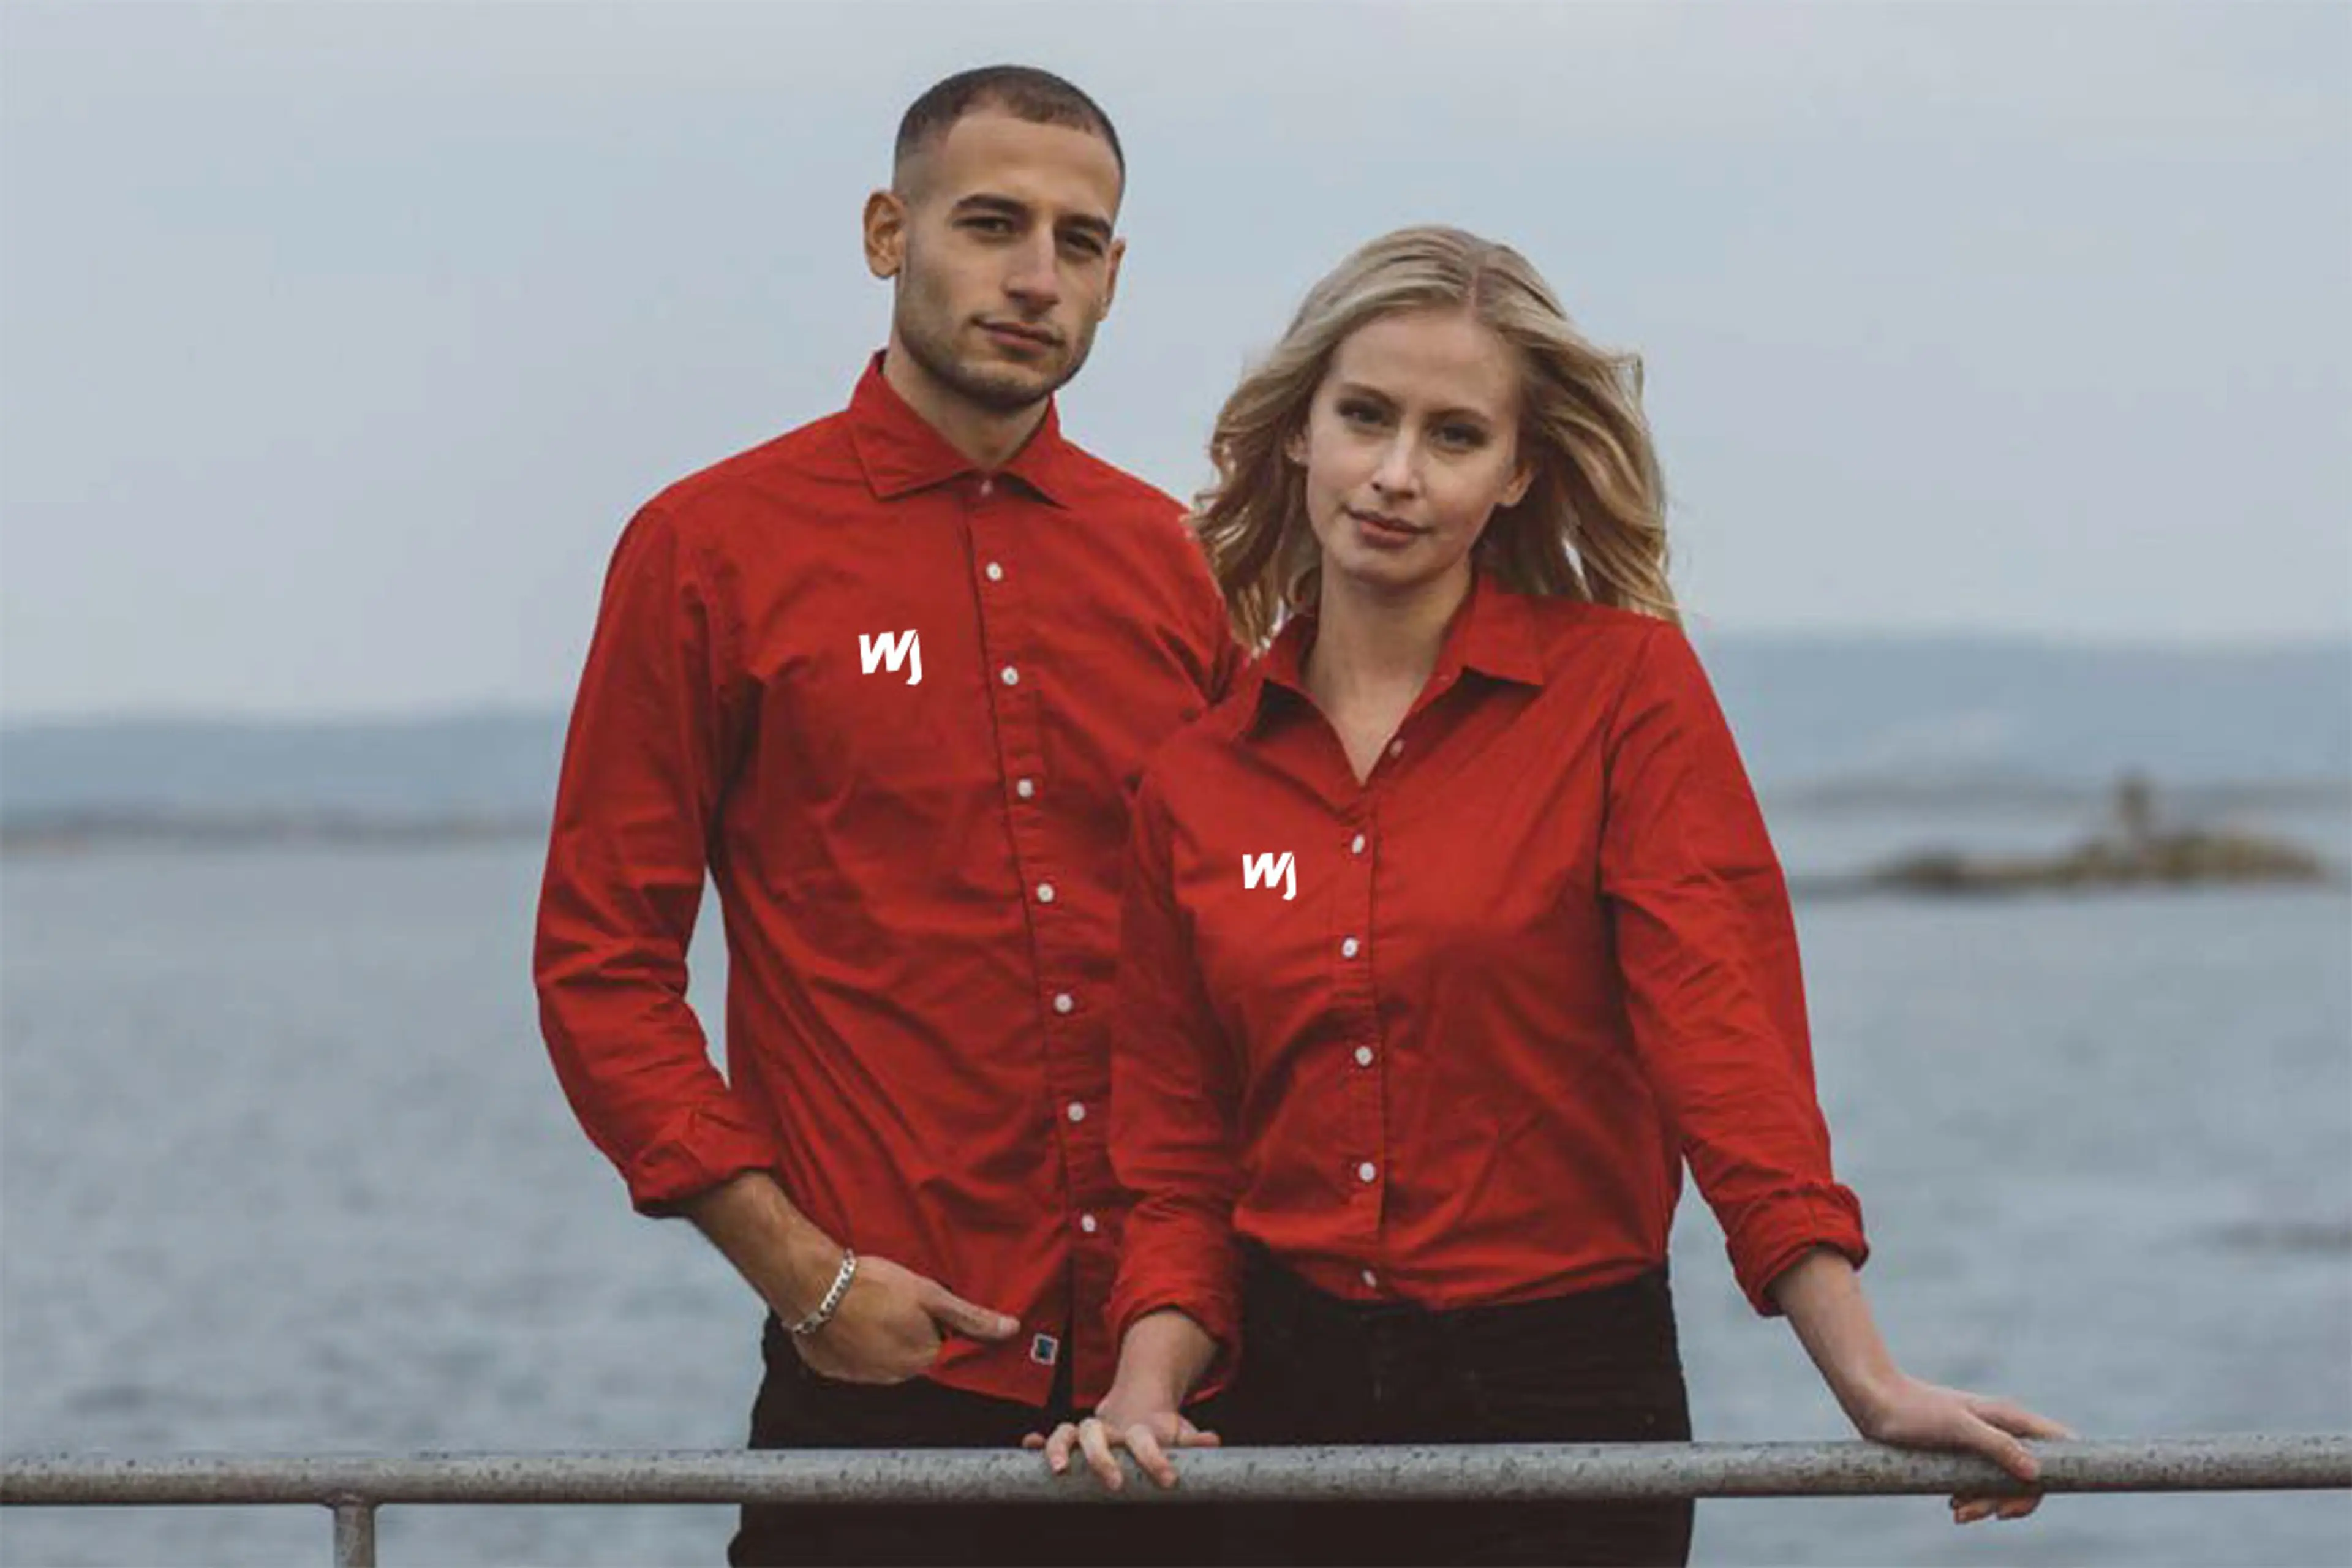 Mann og dame ved sjøen med firmaprofilerte skjorter